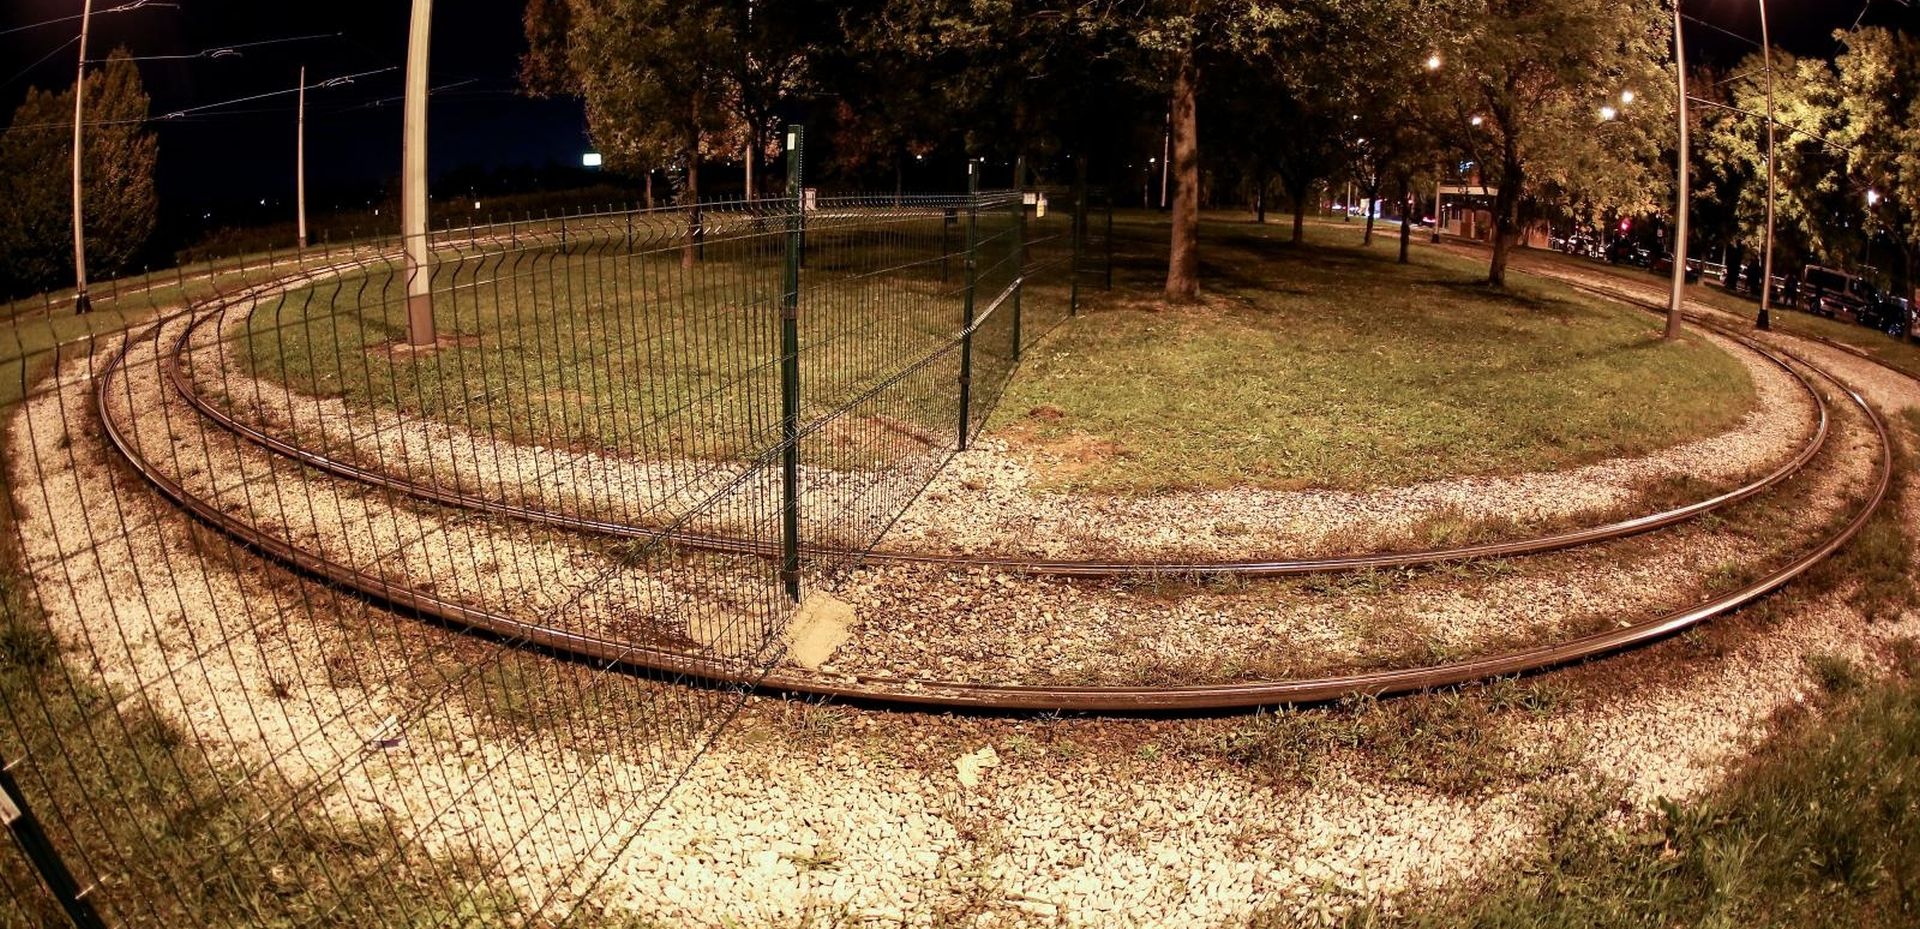 01.10.2019., Zagreb - Obitelj Marsanic postavila je ogradu preko pruge u okretistu tramvaja u Preckom. Photo: Marin Tironi/PIXSELL